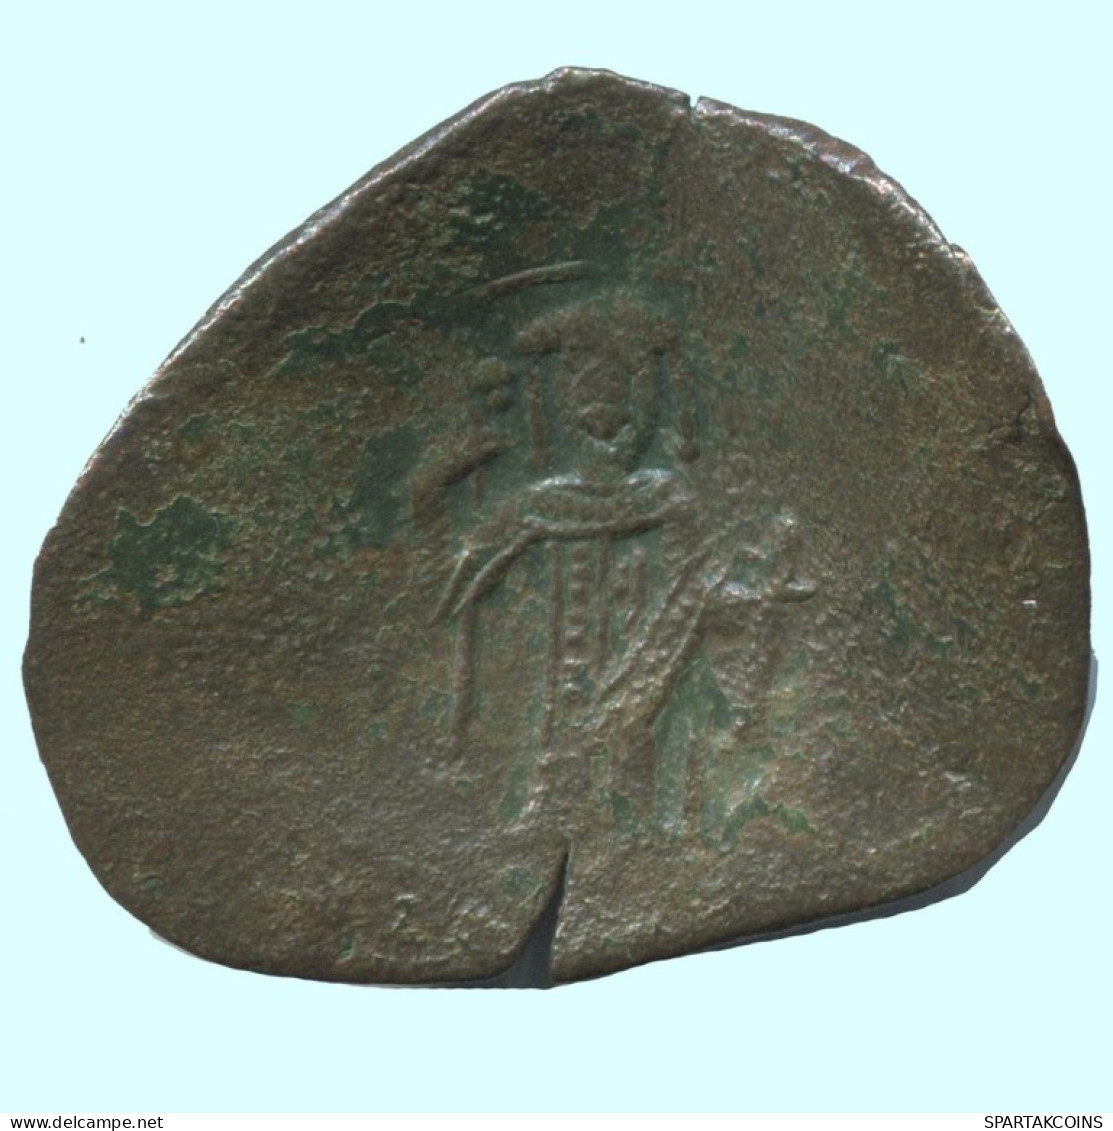 TRACHY BYZANTINISCHE Münze  EMPIRE Antike Authentisch Münze 1.5g/21mm #AG626.4.D.A - Byzantinische Münzen